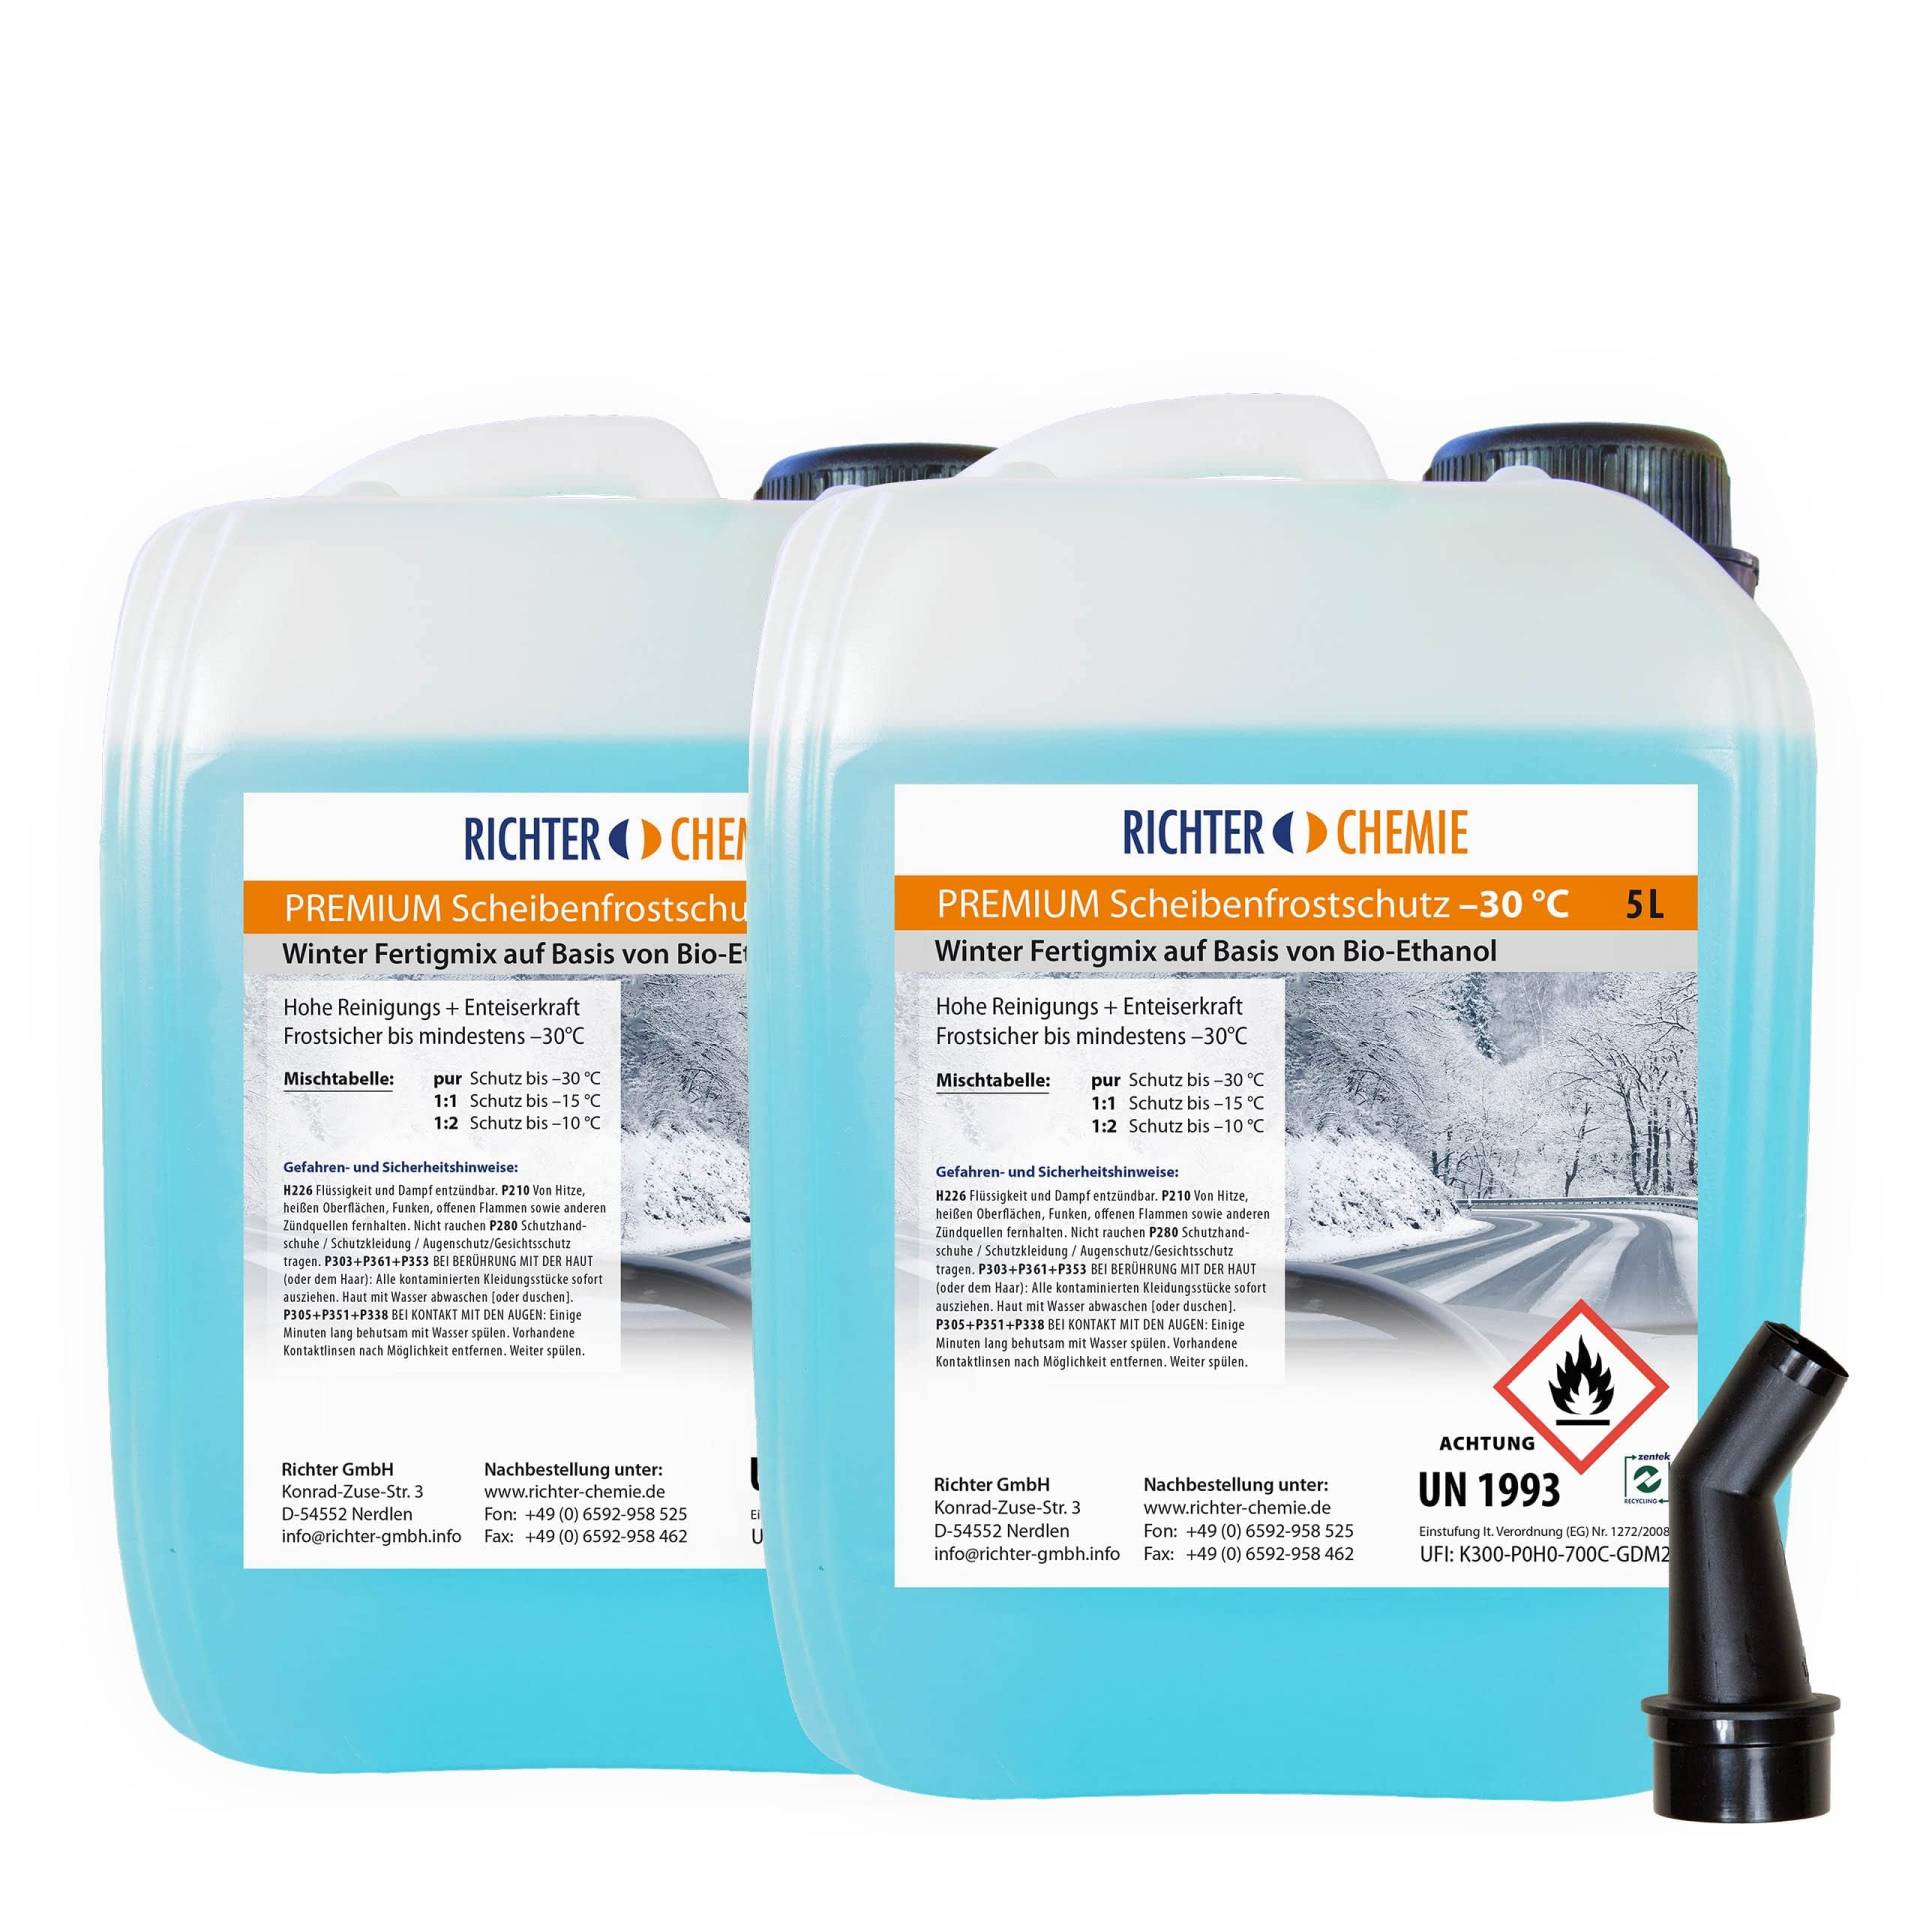 2 x 5 Liter Premium Scheibenfrostschutz -30°C Wischwasser Fertigmix Auto Scheibenwaschanlage Citrus Duft von Richter Chemie